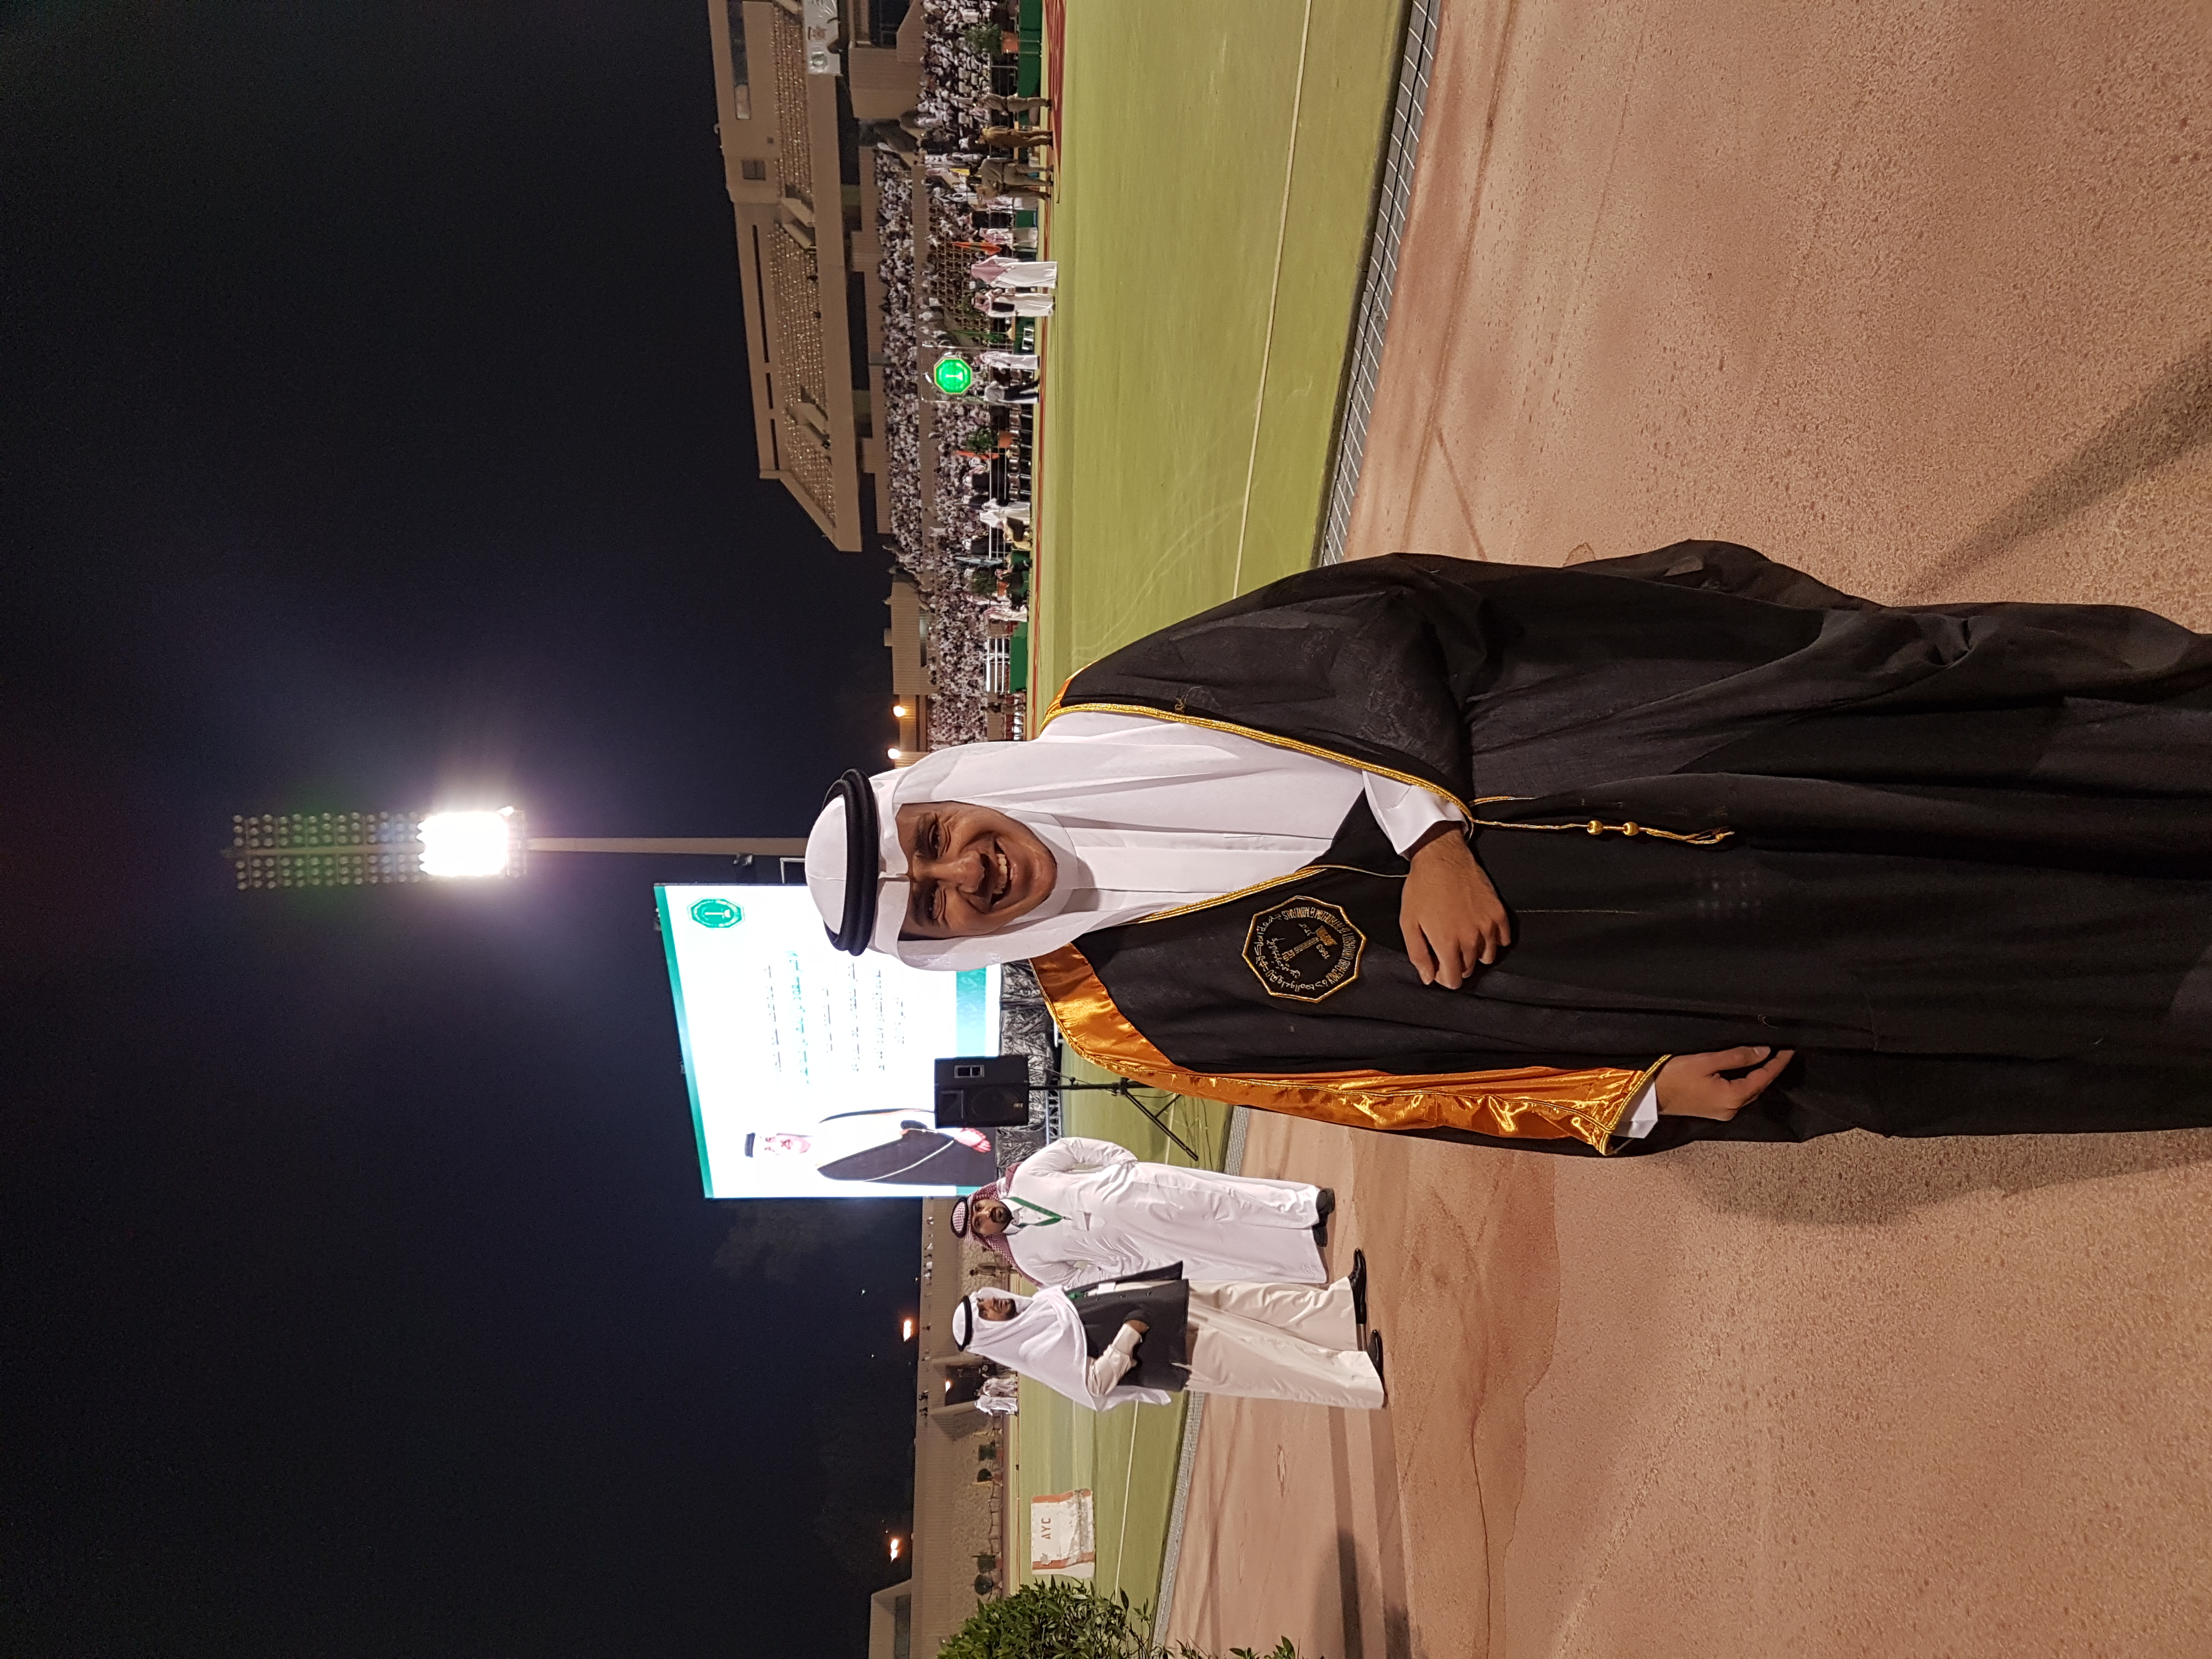 student 201573270 عبدالعزيز بن حسن بن عبدالعزيز الجبر picture